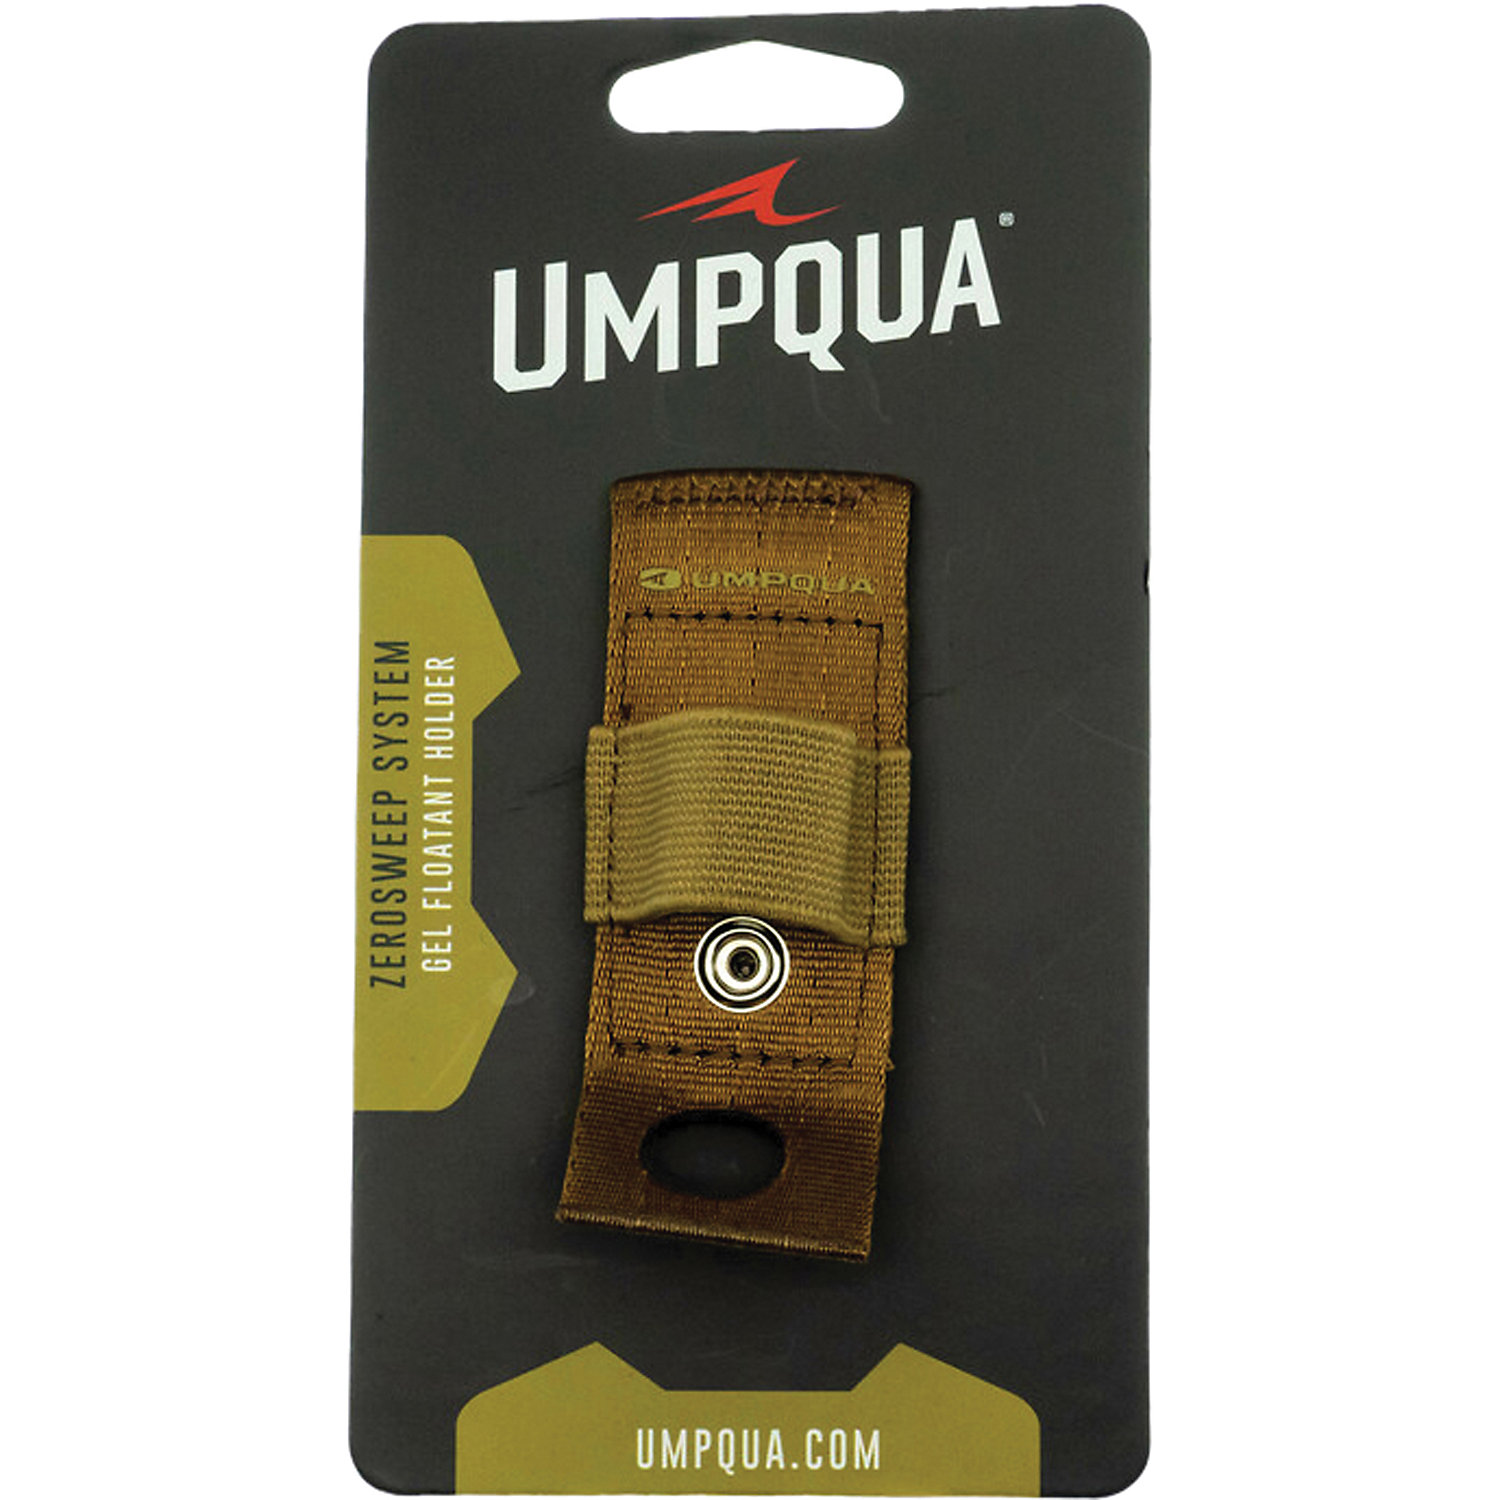 Umpqua Zs2 Gel Floatant Holder